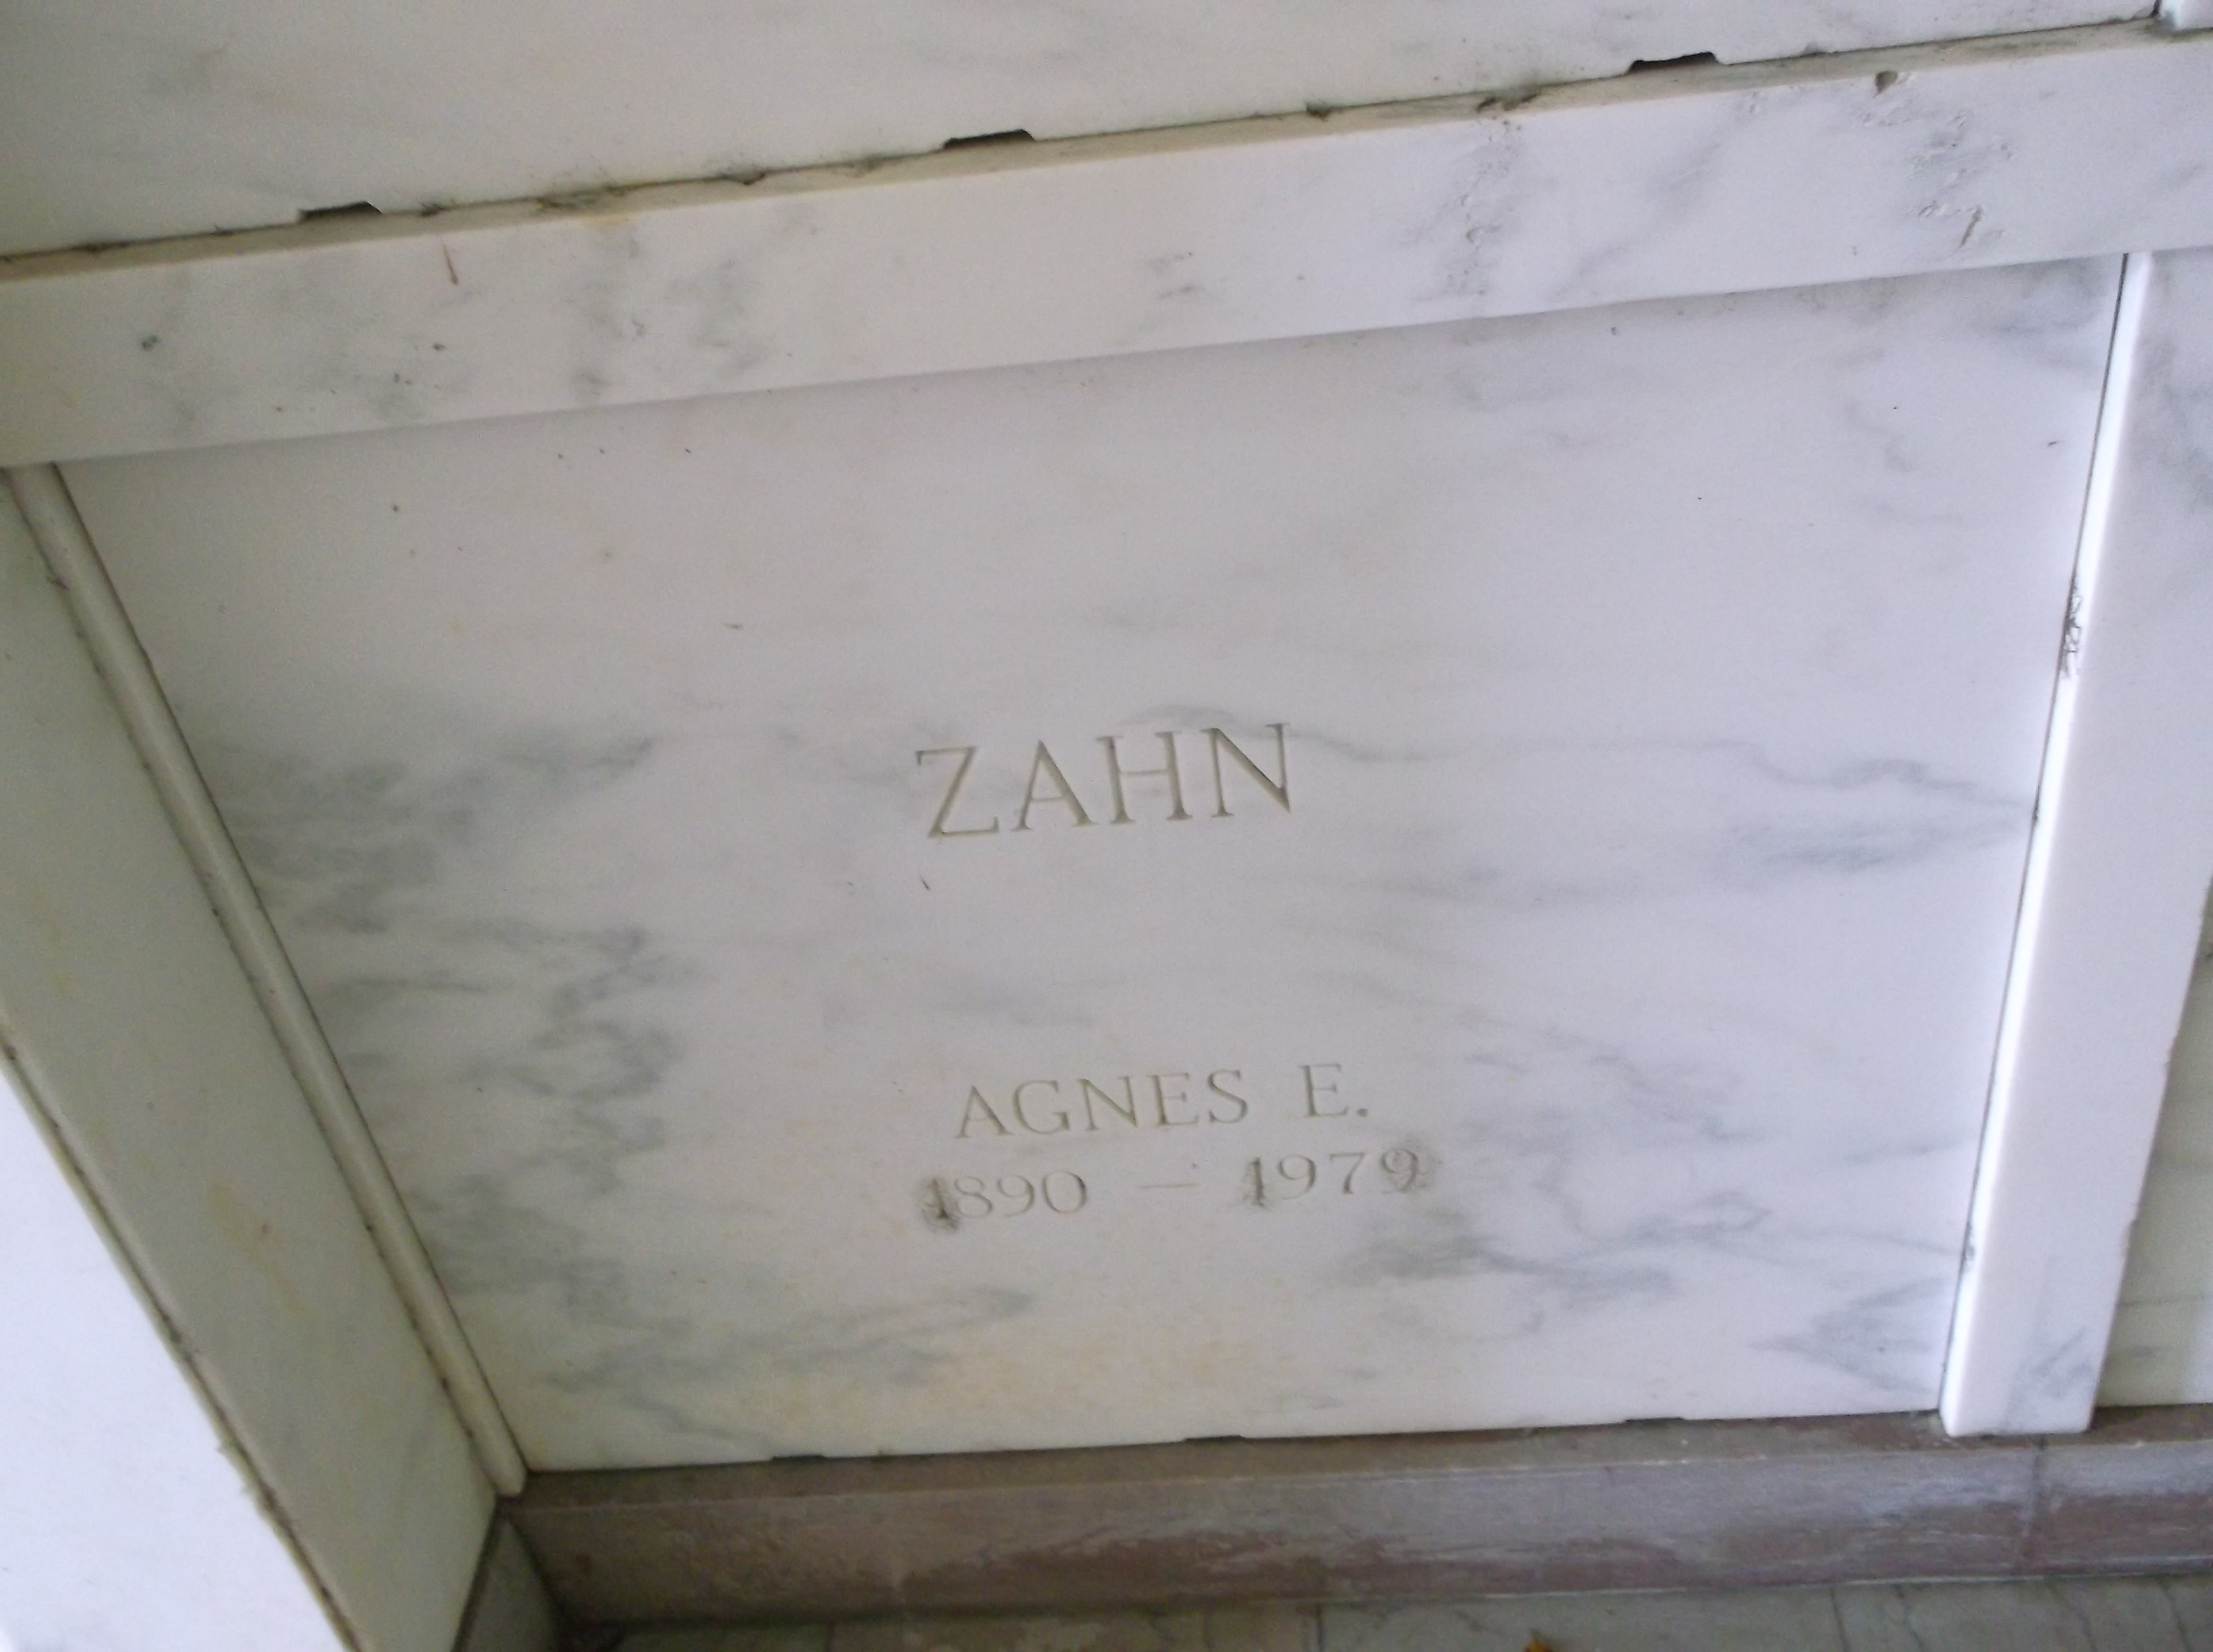 Agnes E Zahn